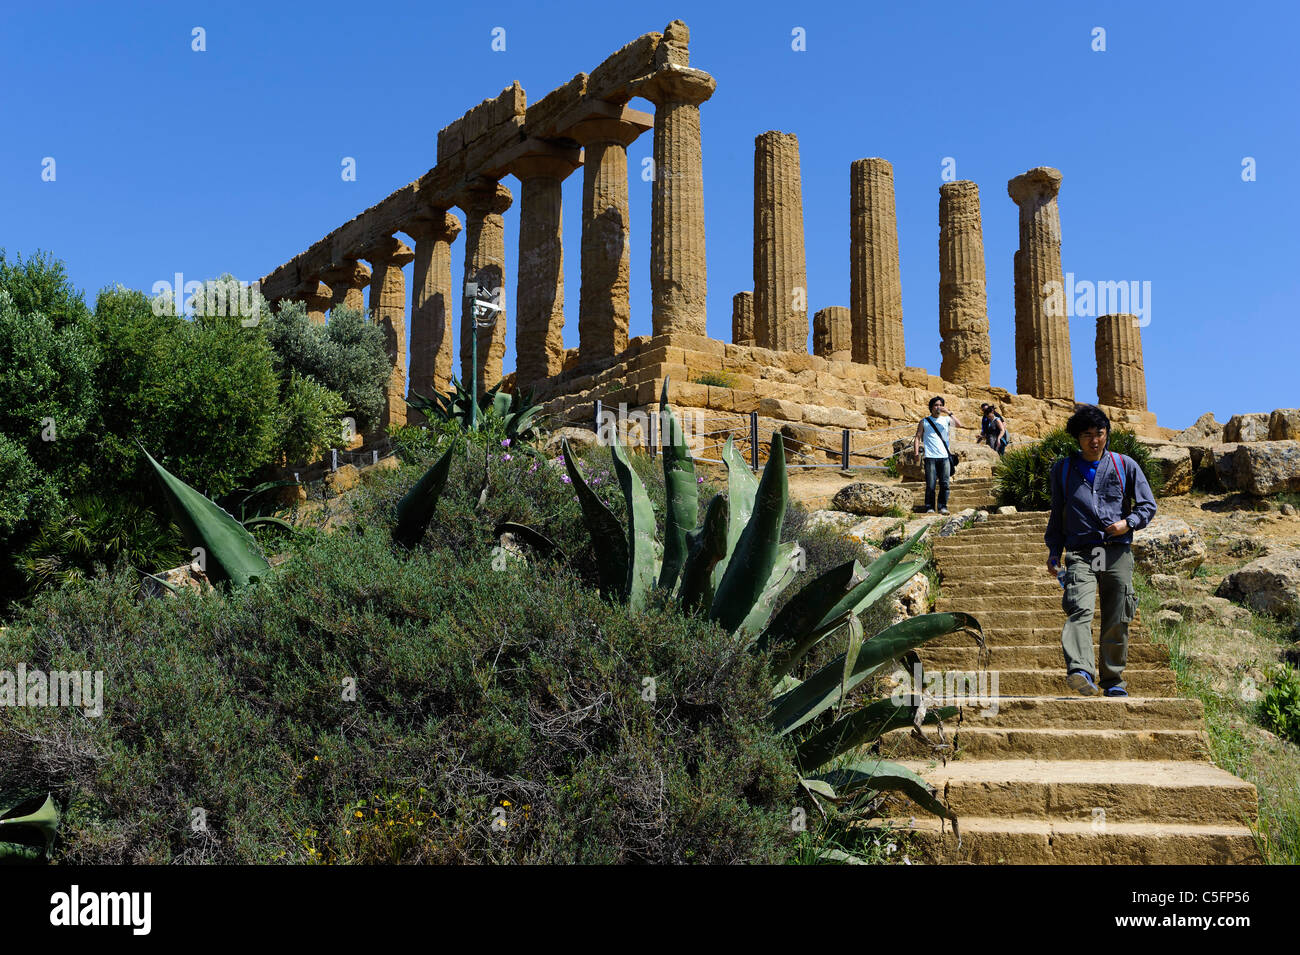 Tempio di Giunone (Juno-Temple) in Agrigent (Agrigento), Sicily, Italy Stock Photo